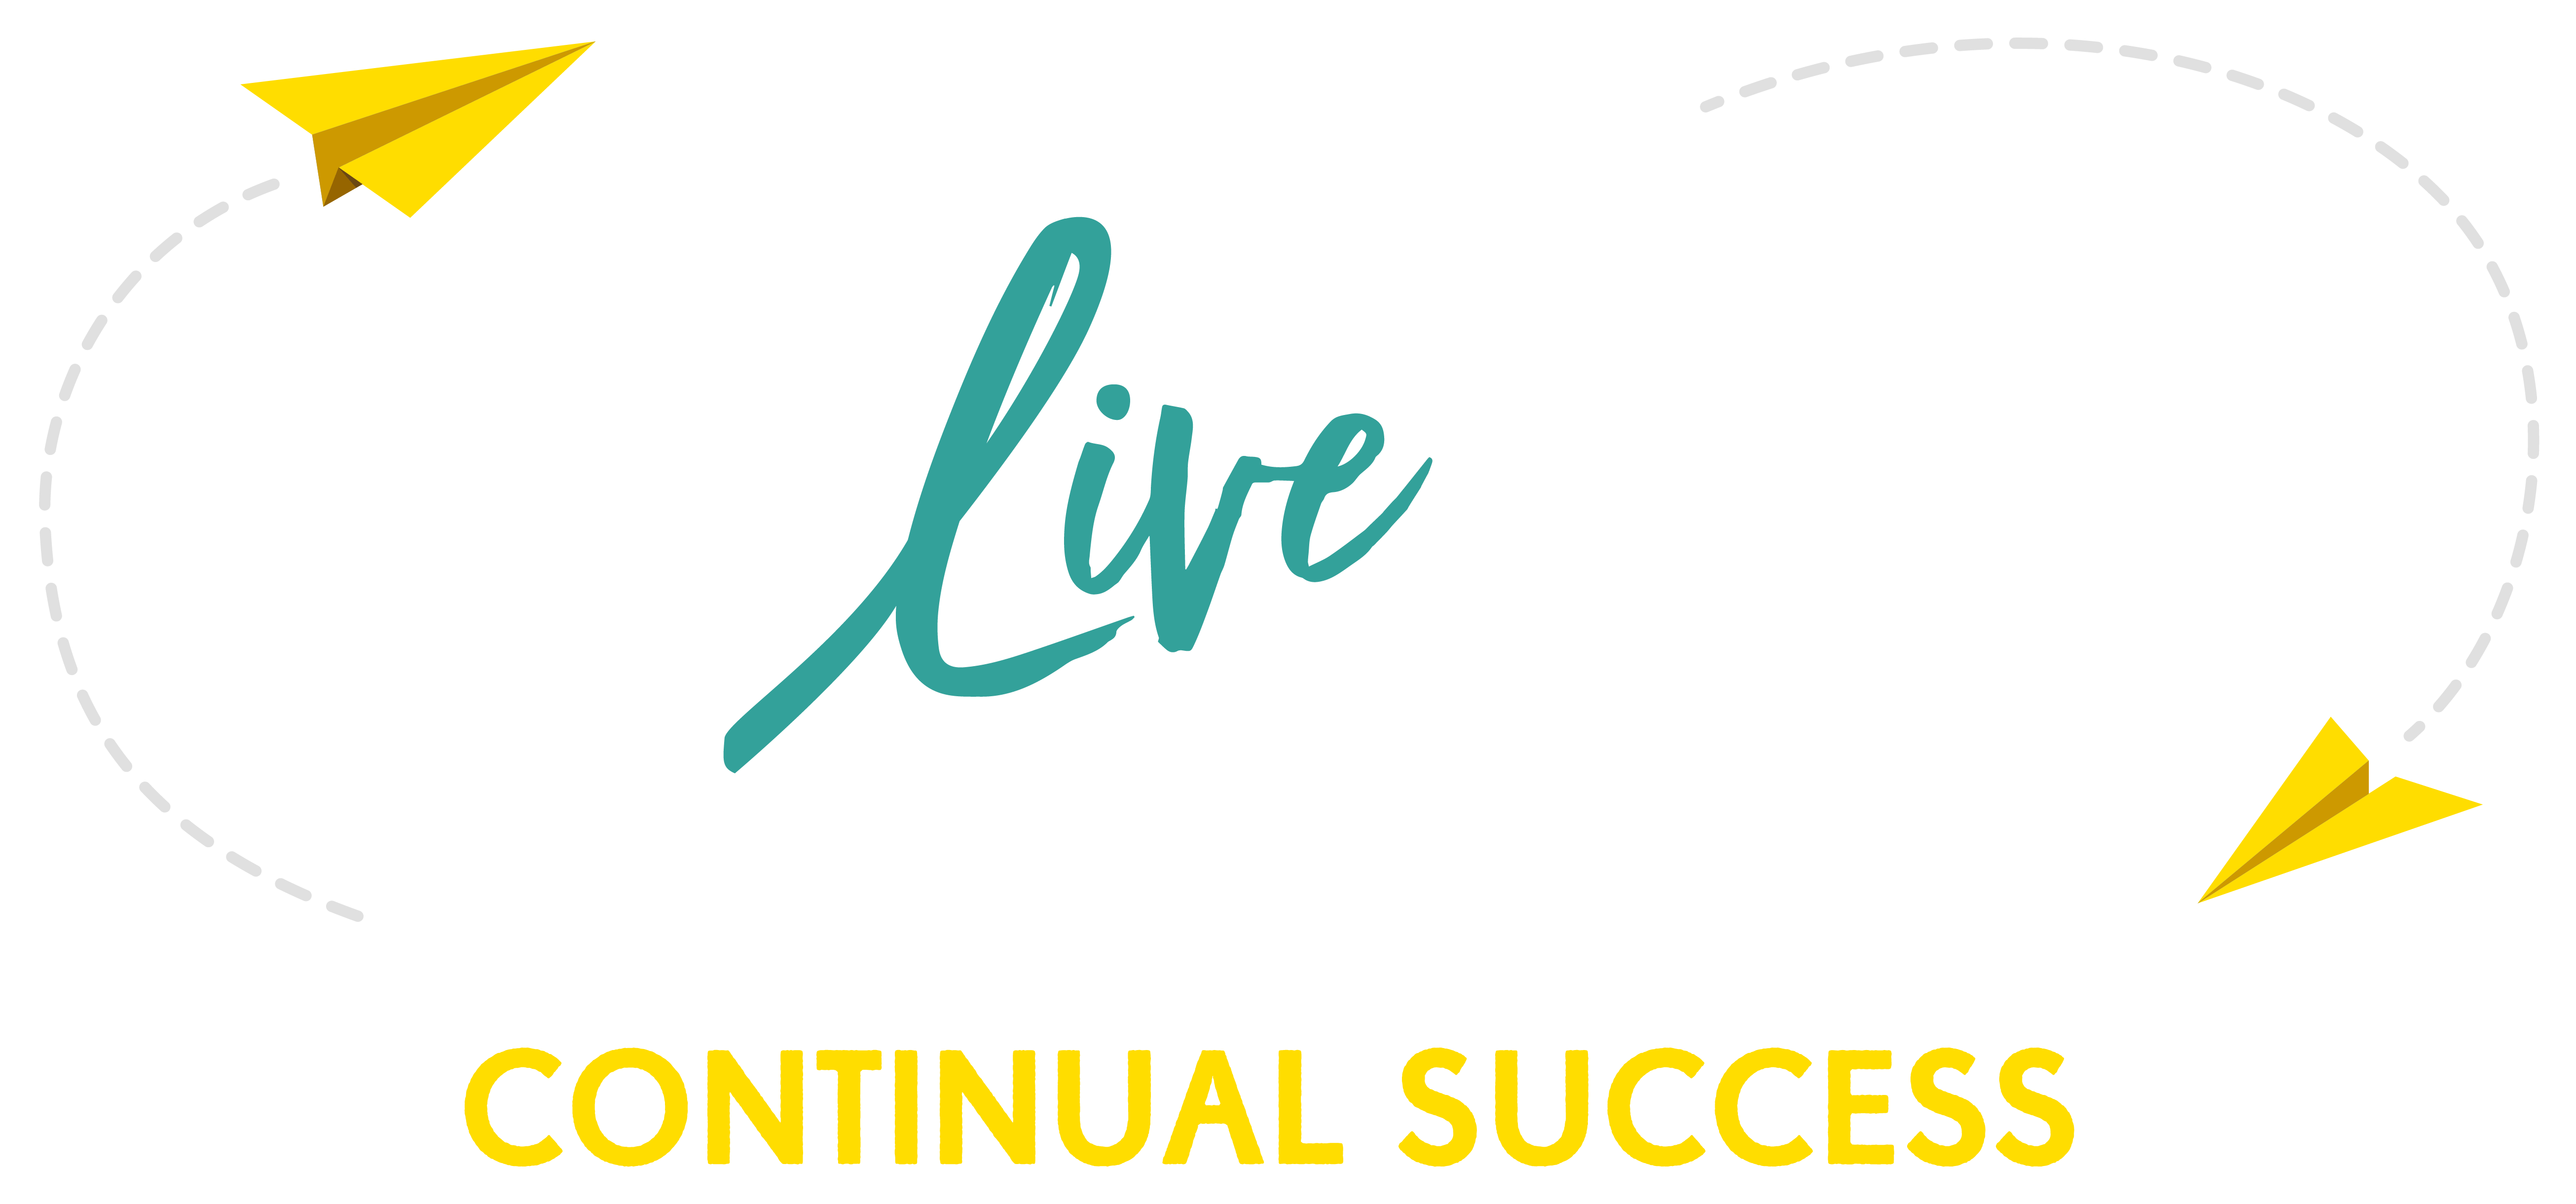 Go Engage data product logo